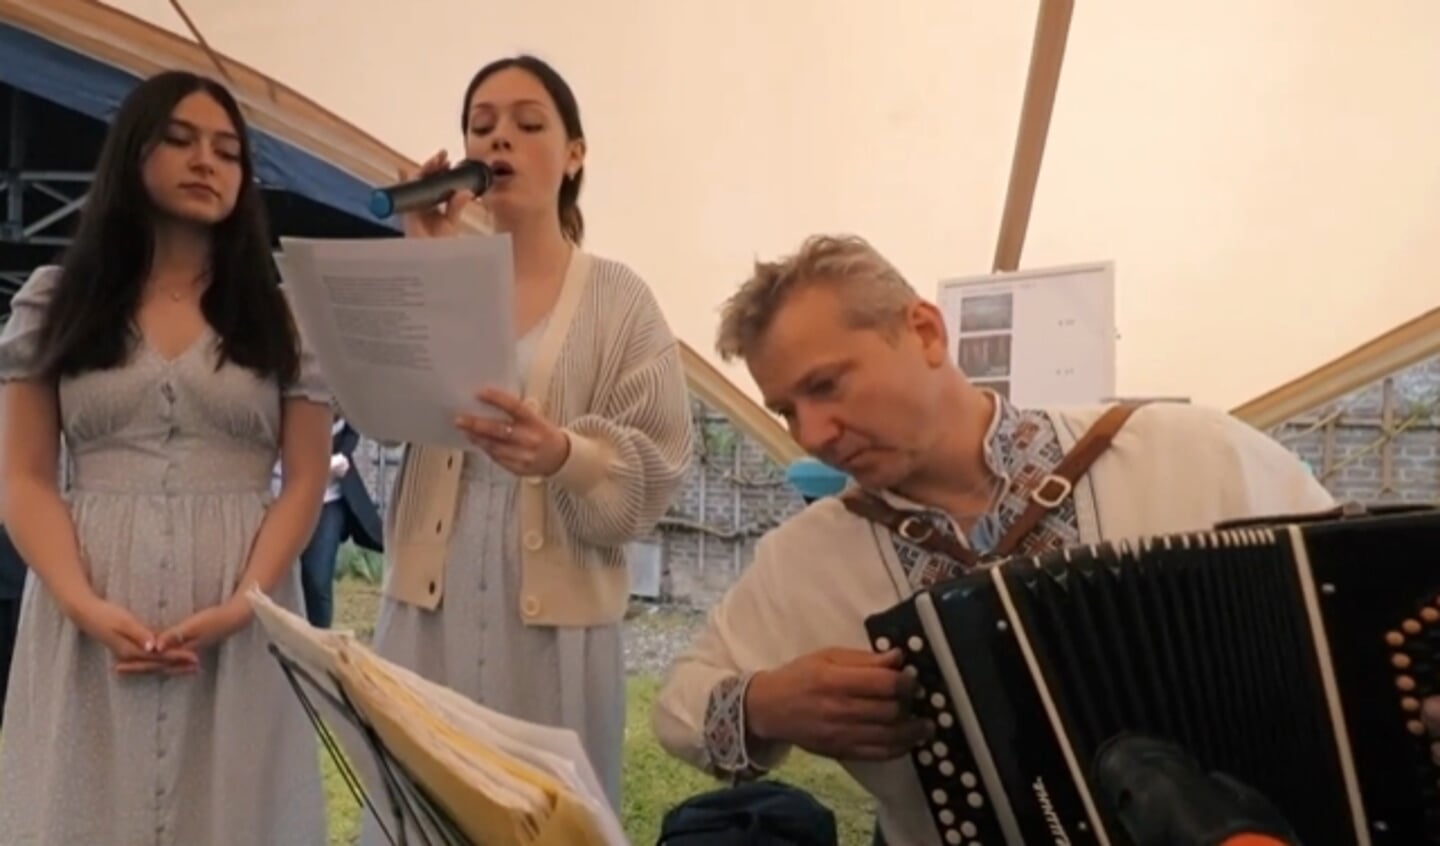 Accordeonmuziek en zang van de Oekraïense Oleg Lysenko en Nastya en Anya Sulimenko